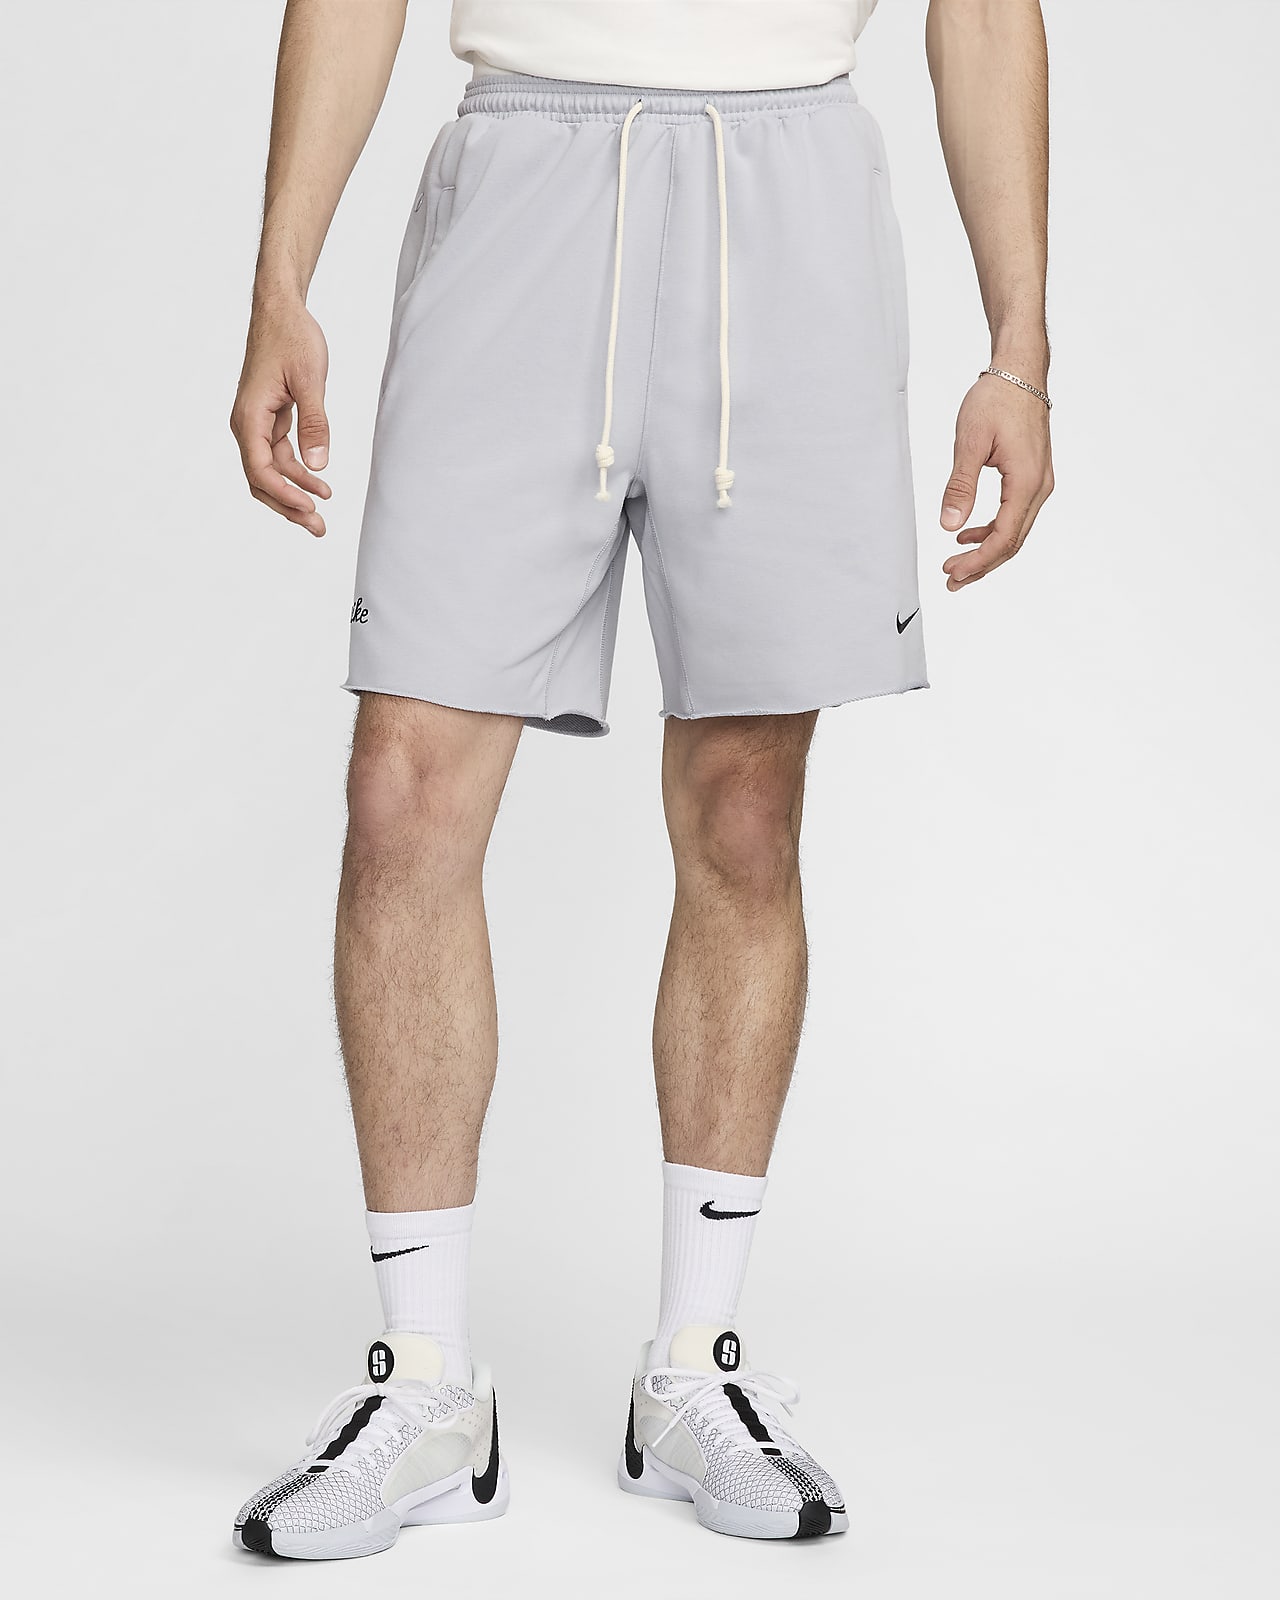 Ανδρικό σορτς μπάσκετ Dri-FIT Nike Standard Issue 20 cm